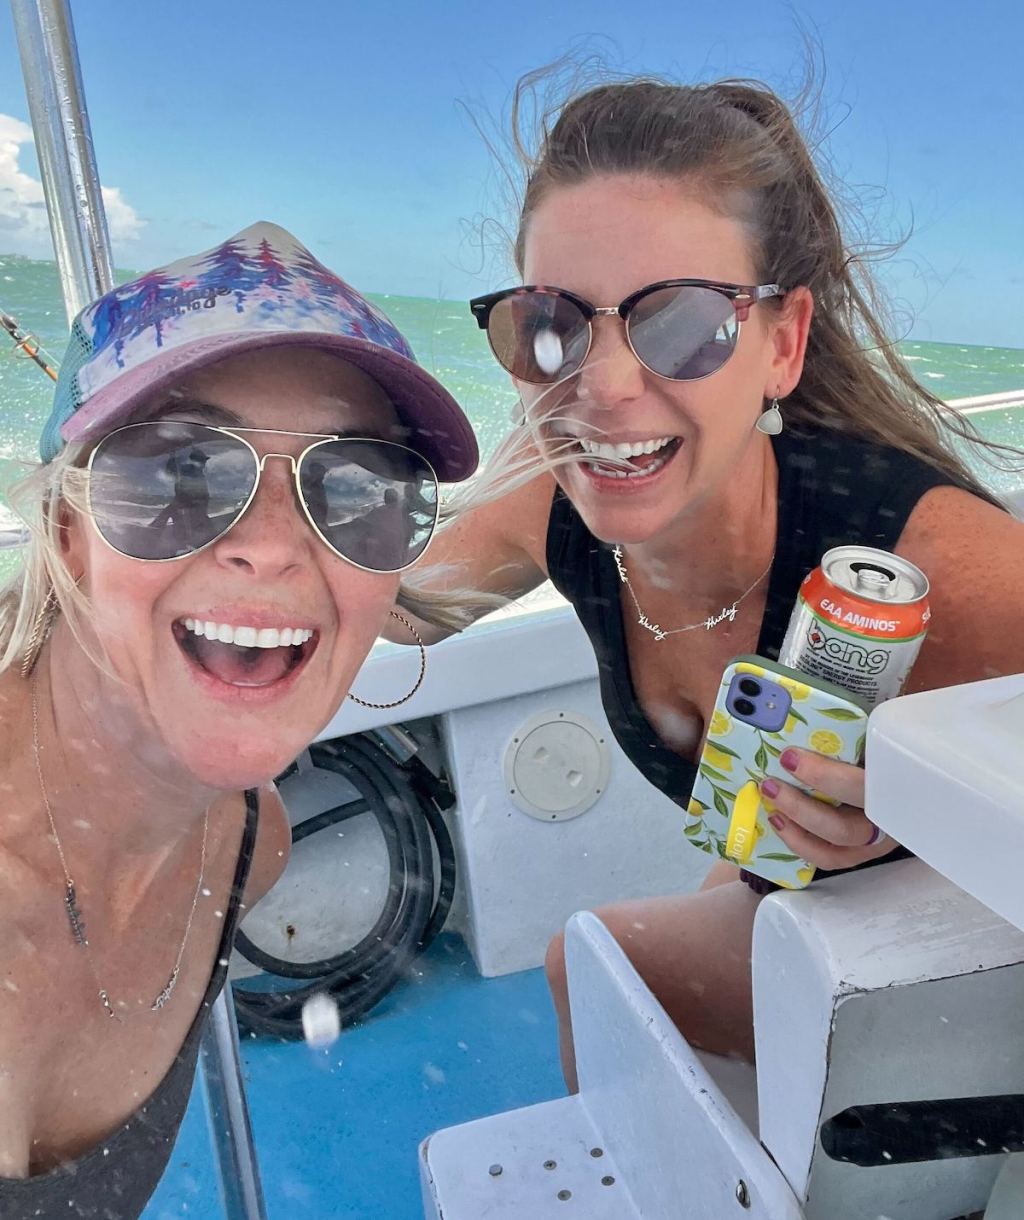 two women wearing sunglasses smiling on boat in ocean blue waters